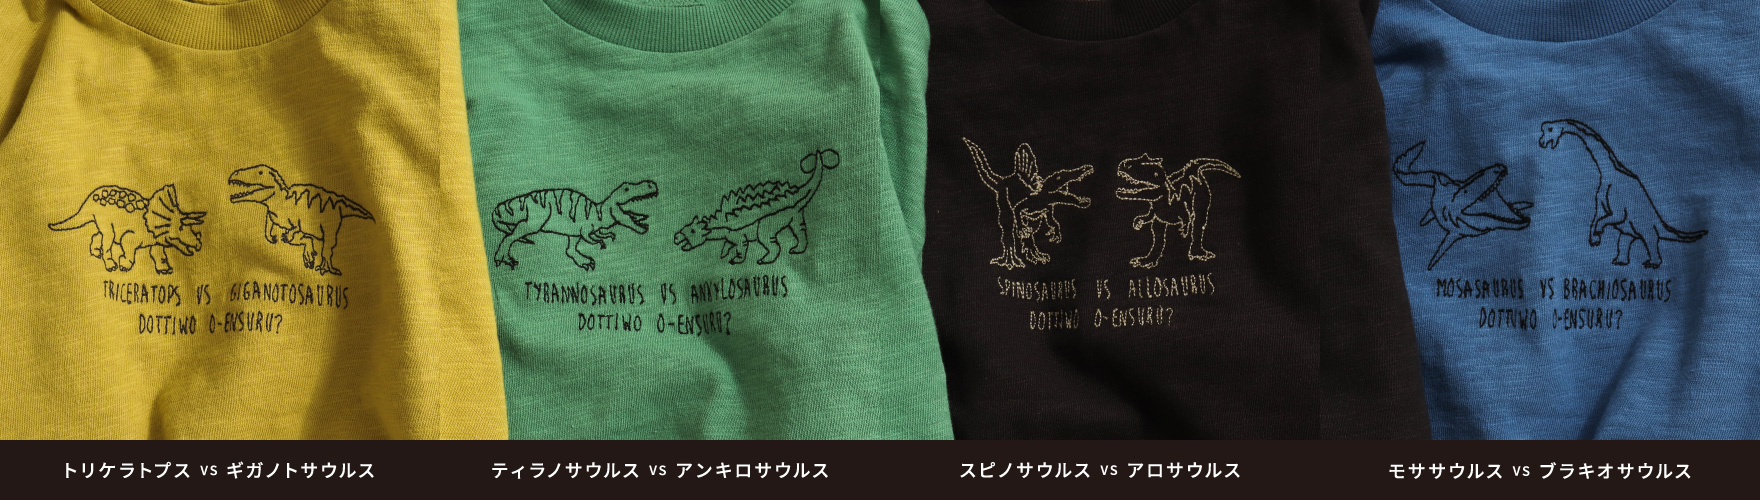 恐竜VS長袖Tシャツ 種類一覧